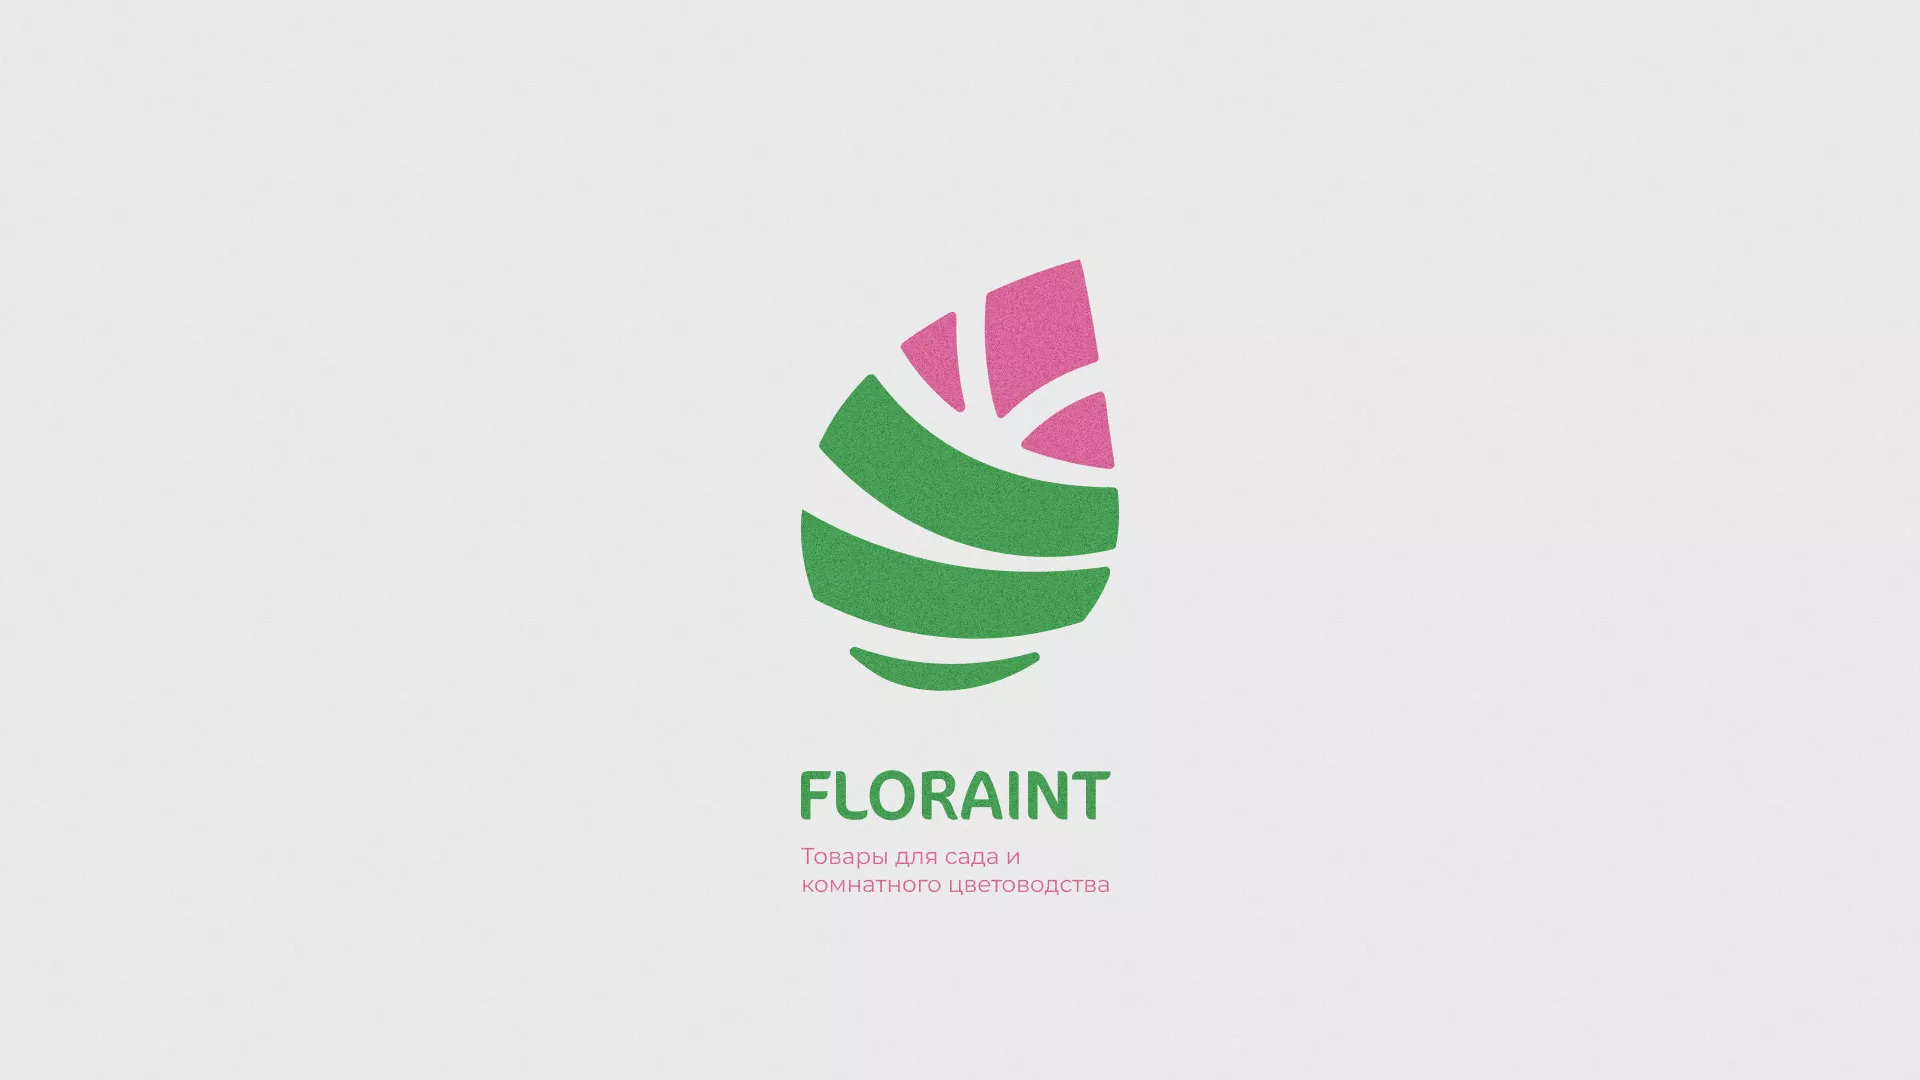 Разработка оформления профиля Instagram для магазина «Floraint» в Усть-Каменогорске